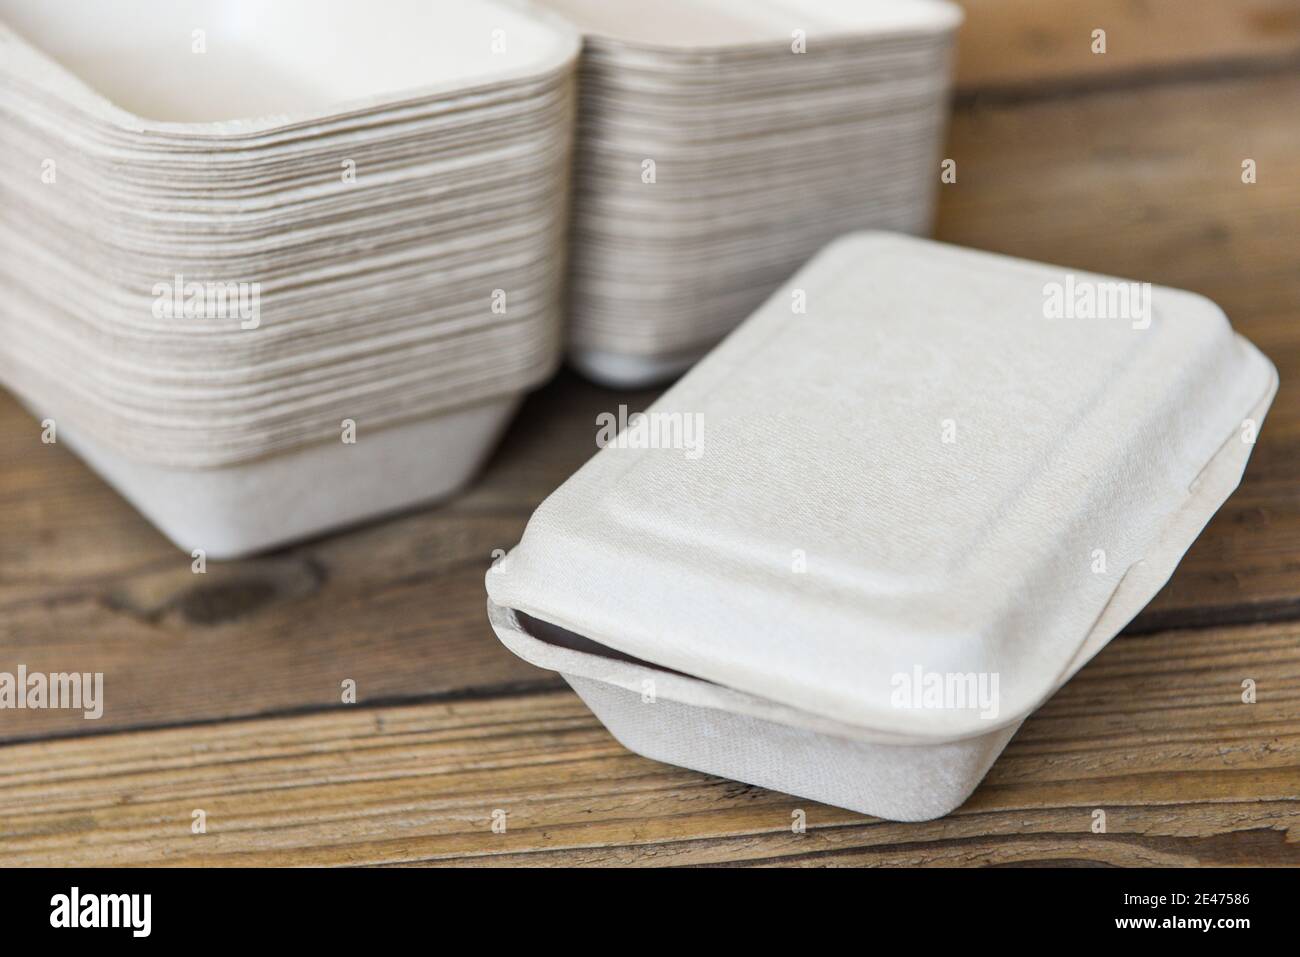 Service Lebensmittel bestellen Online-Lieferung Lebensmittelbox, Lieferung  in Take Away Boxen, Einweg umweltfreundliche Verpackungsbehälter auf  Holztisch zu Hause Stockfotografie - Alamy